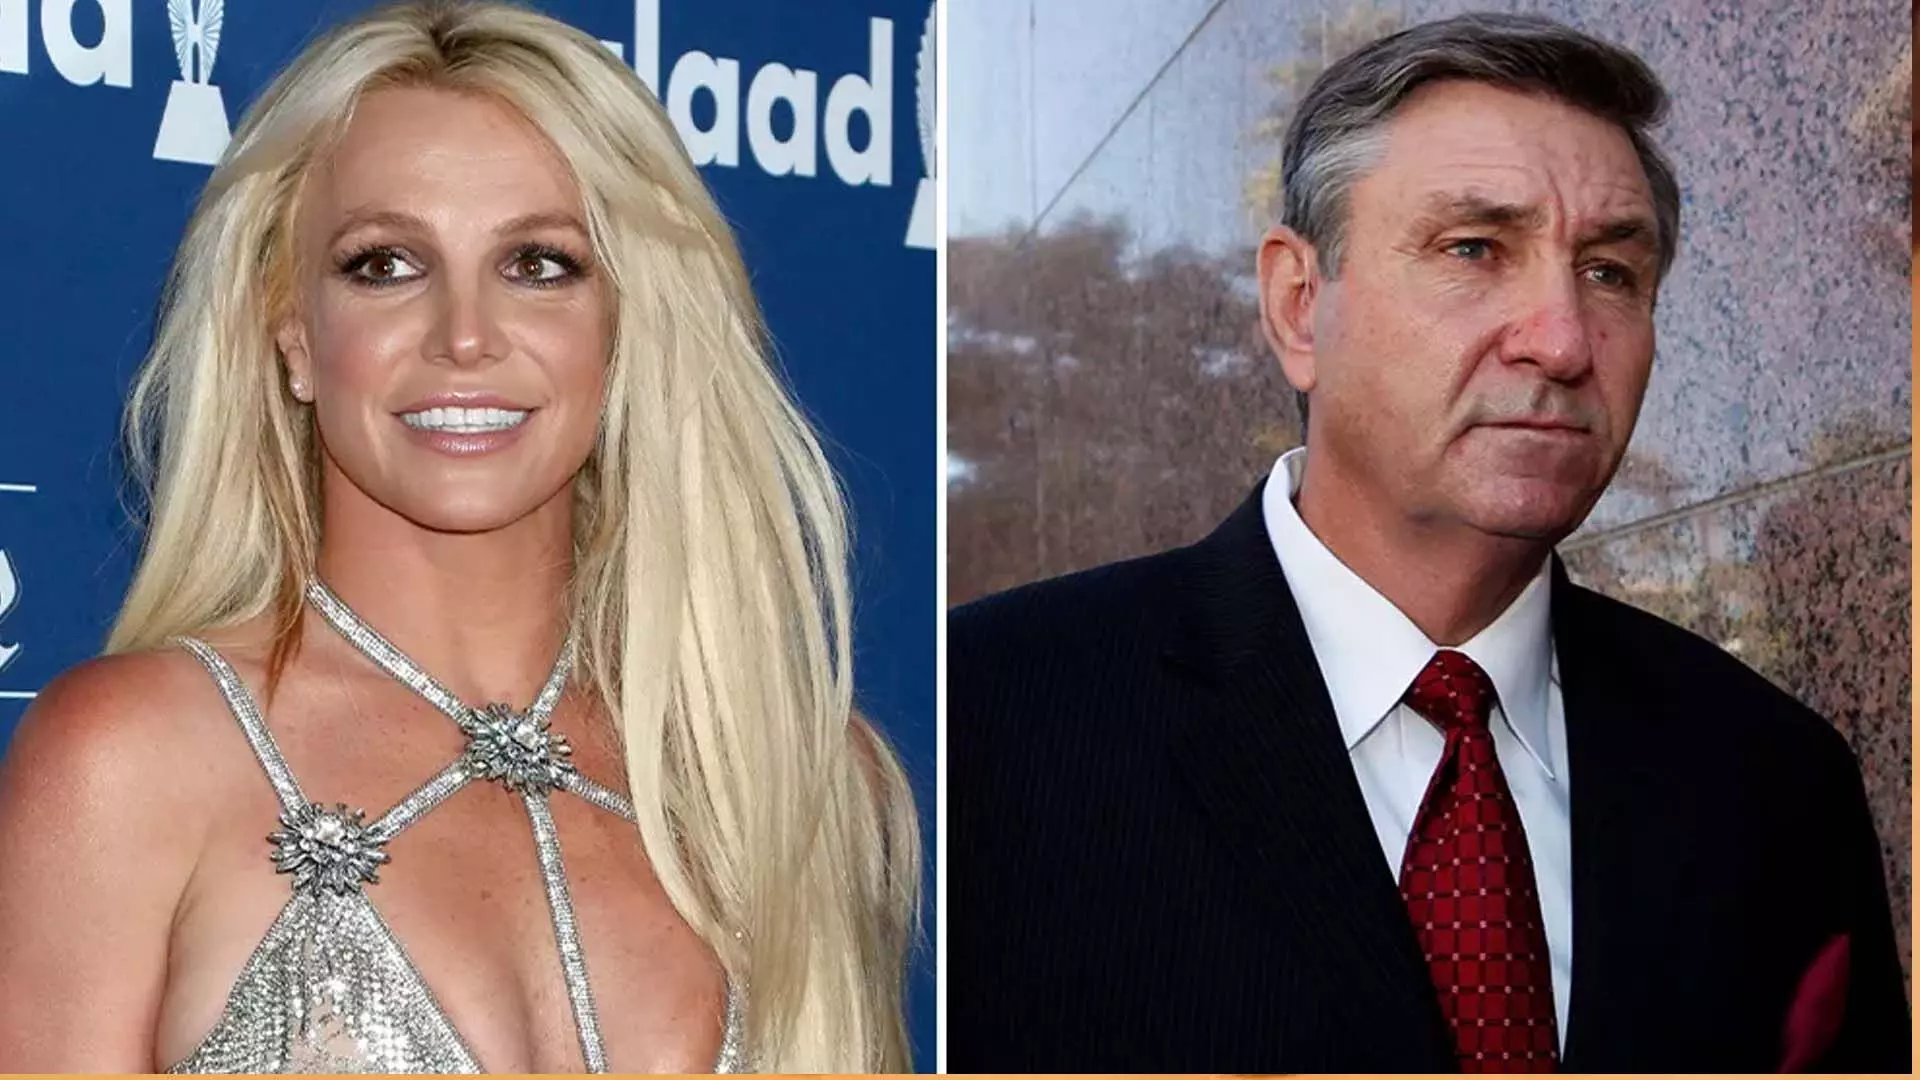 ब्रिटनी स्पीयर्स ने अपने पिता के साथ कानूनी मुकदमों को सुलझा लिया